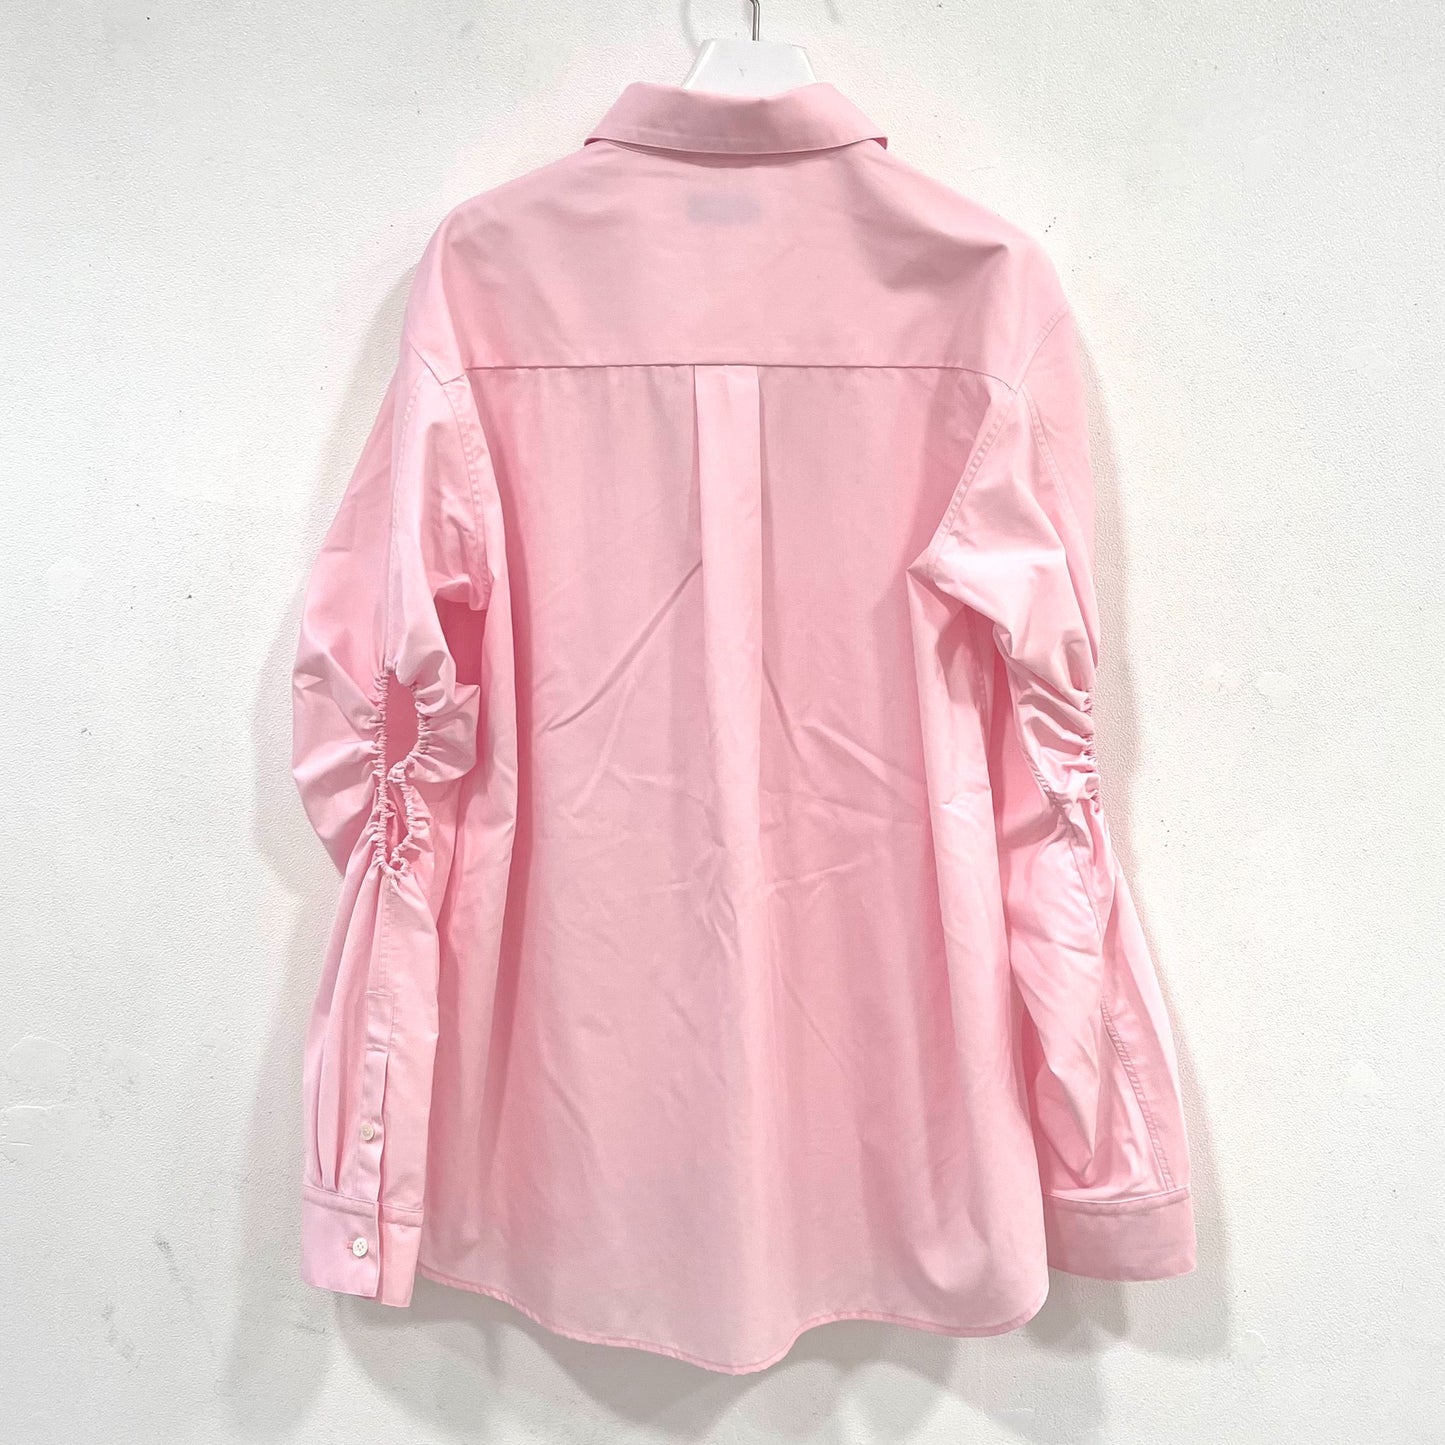 EG pin tucked Shirts / Pink / ピンタック丸襟シャツ